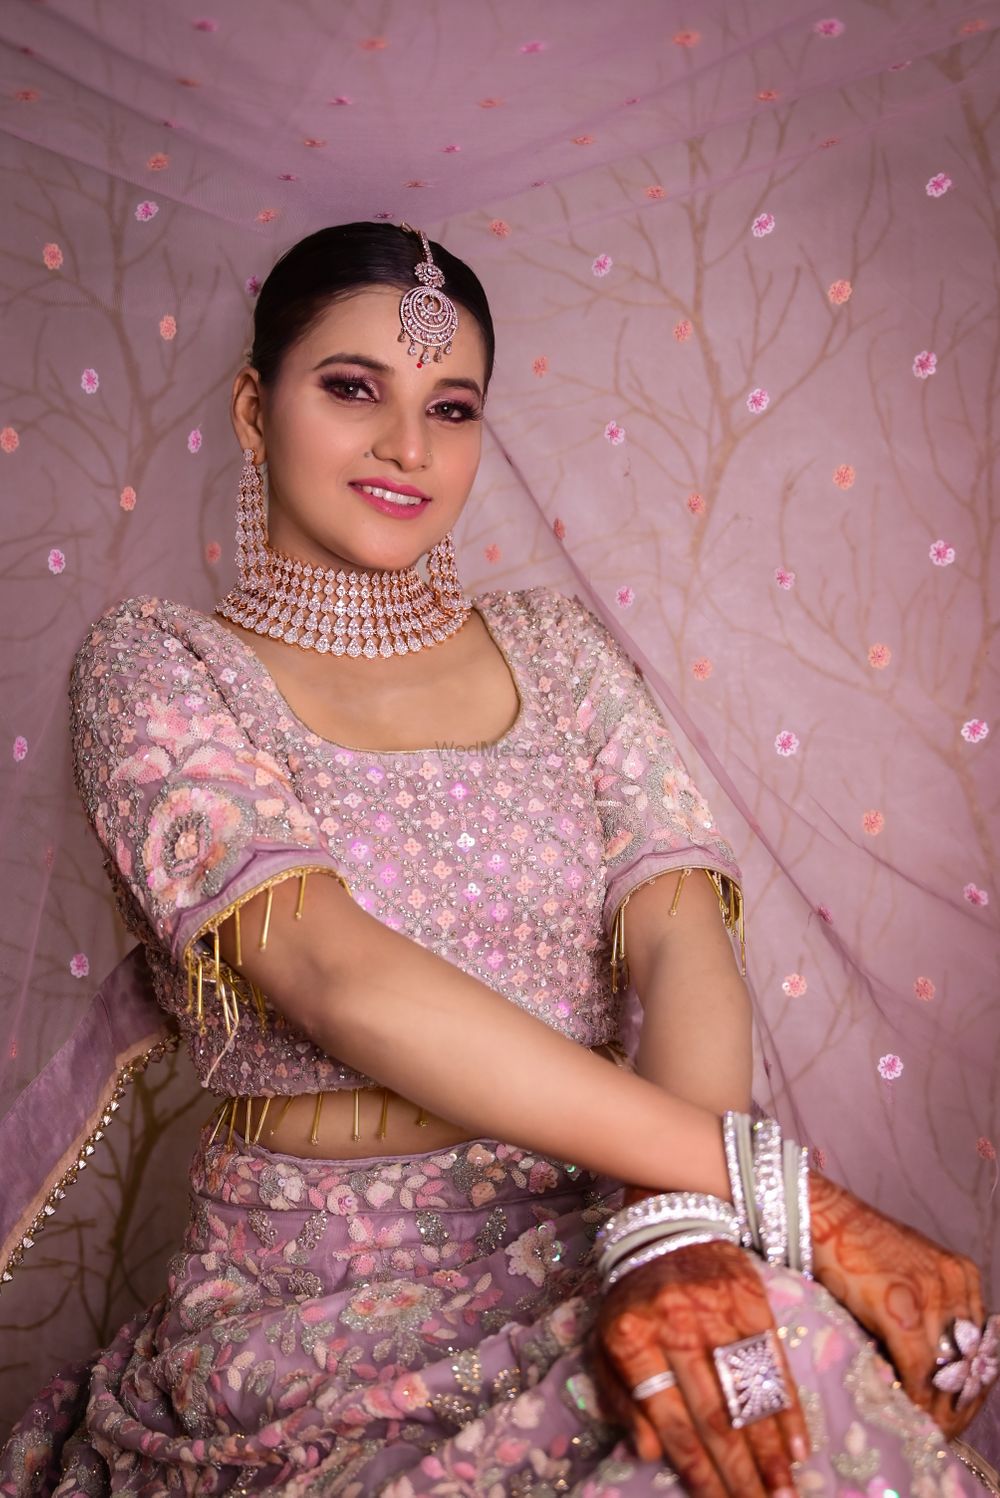 Photo From new look - By Jaipur Makeup Artist Lakshiyata